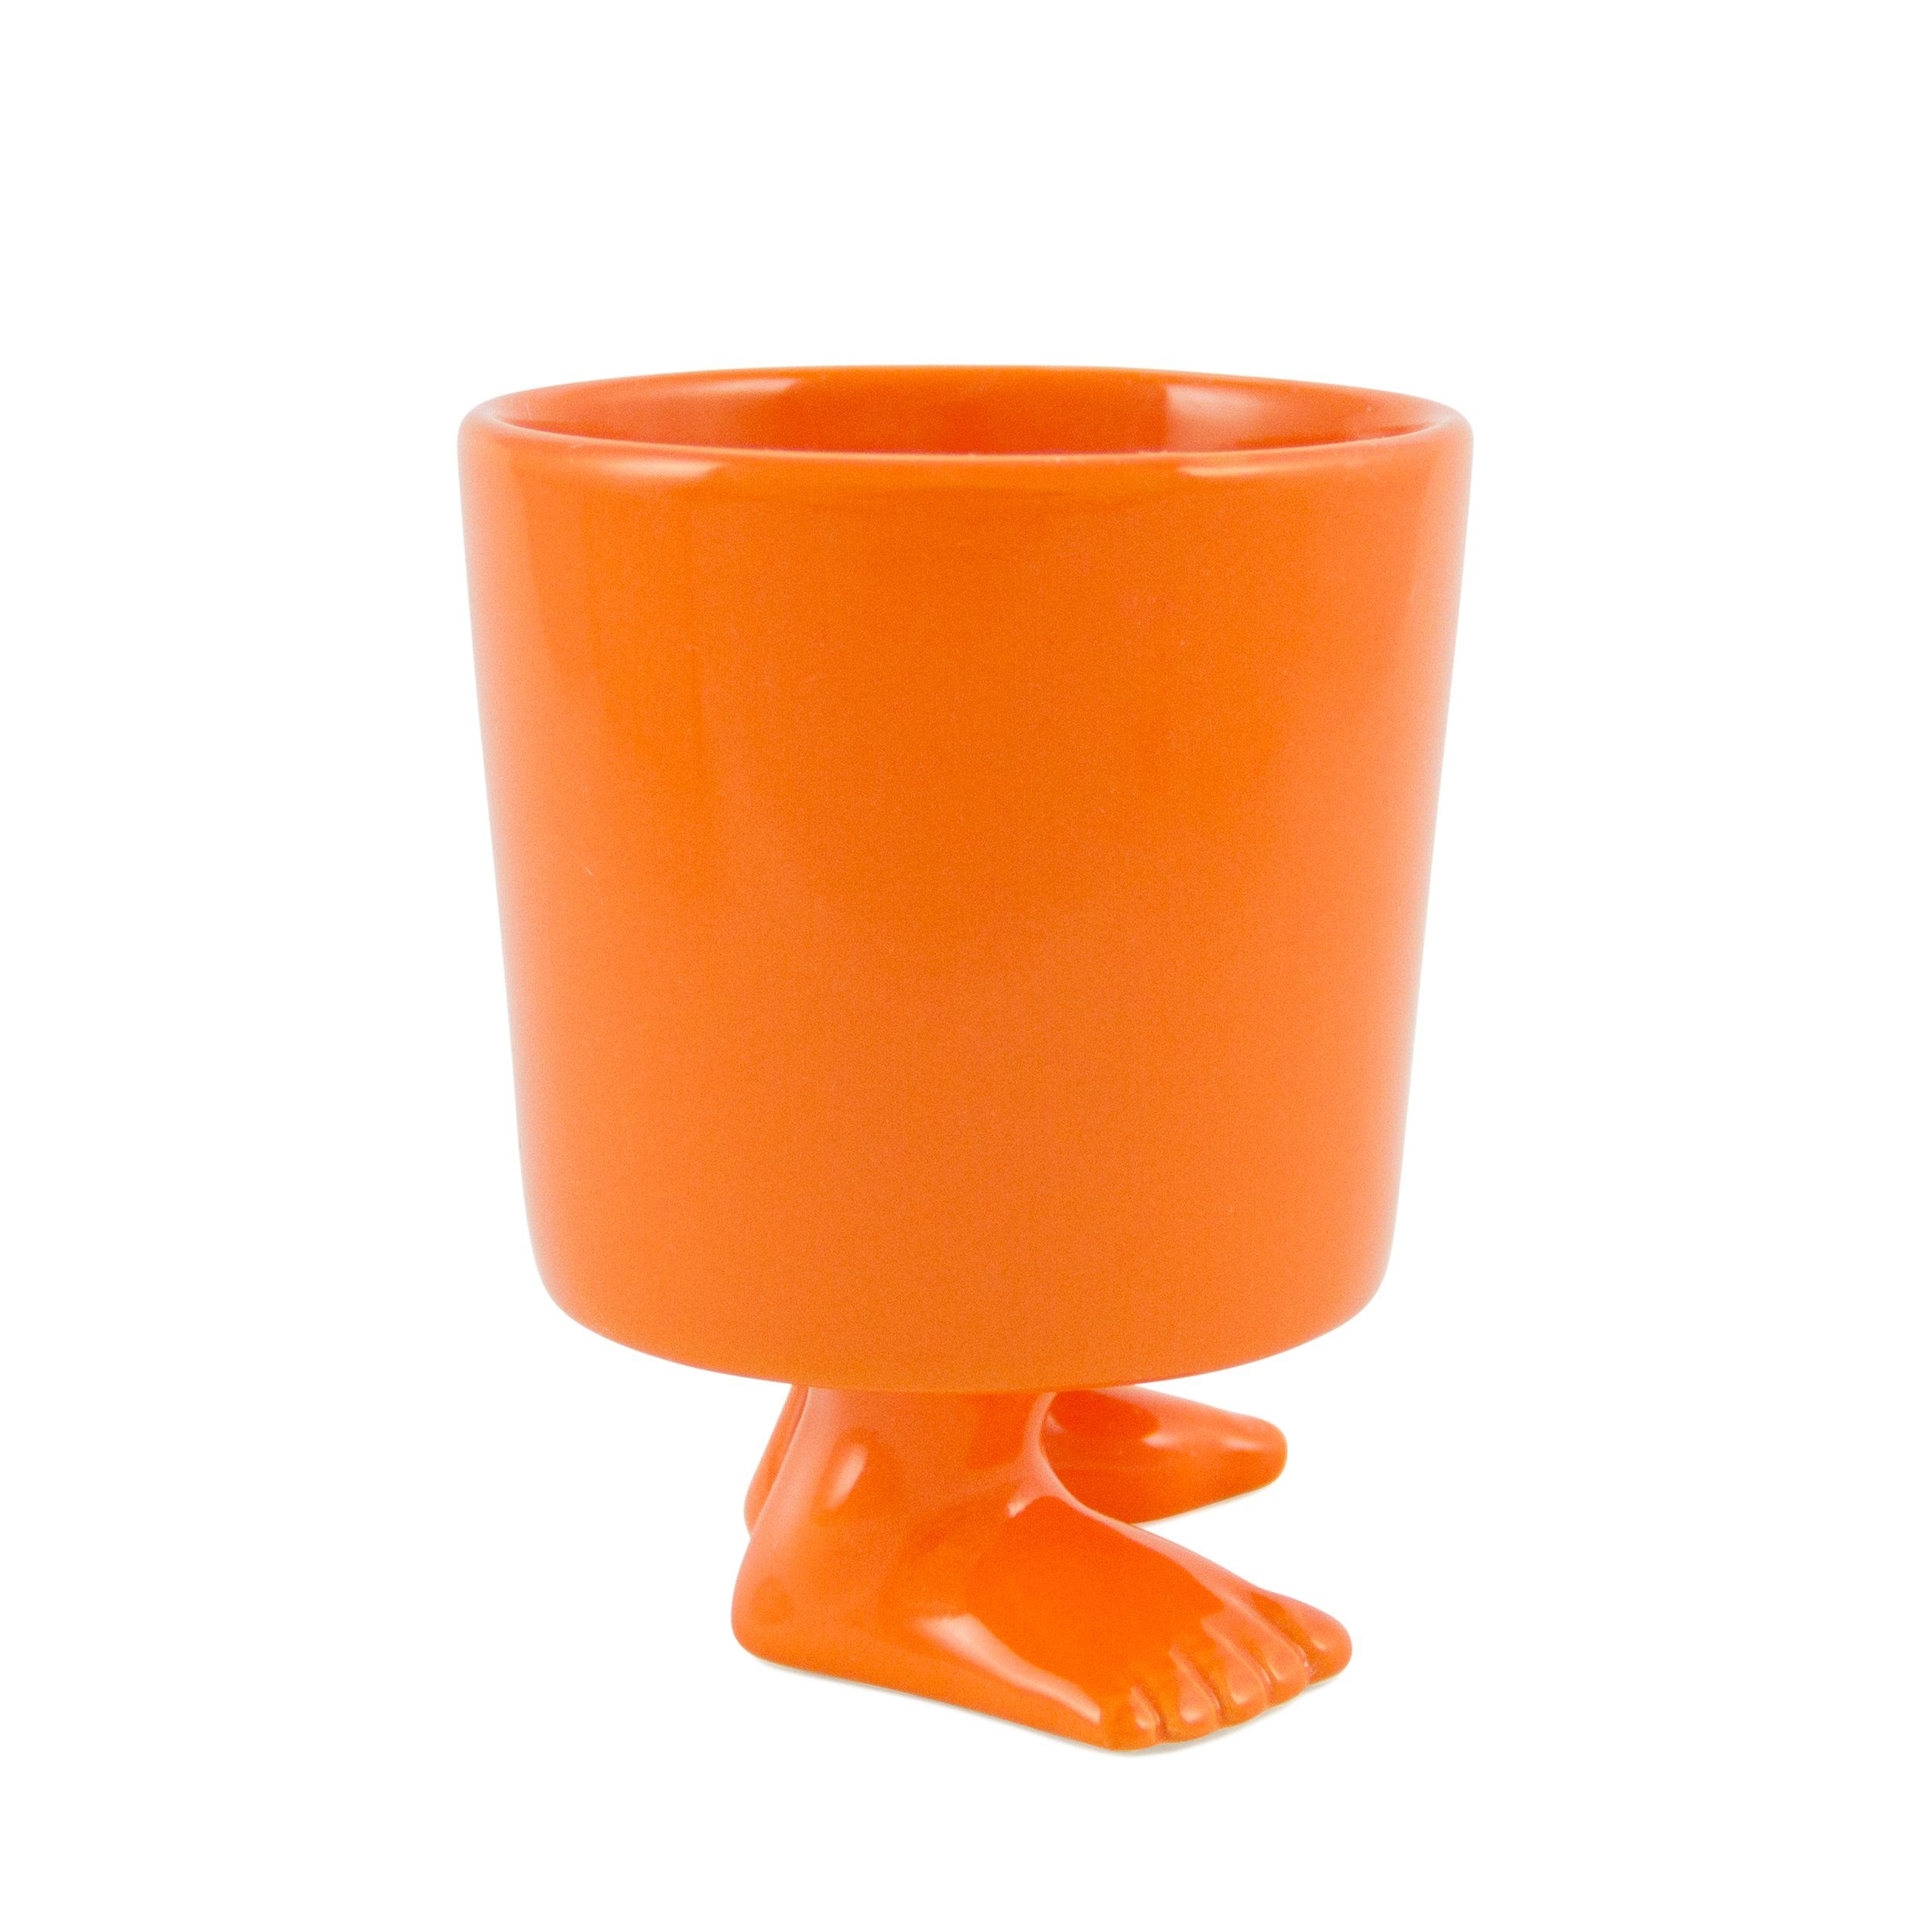 https://dylankendall.com/cdn/shop/products/ceramic-footed-mug-orange-footed-mugs-dylan-kendall-694477.jpg?v=1600113361